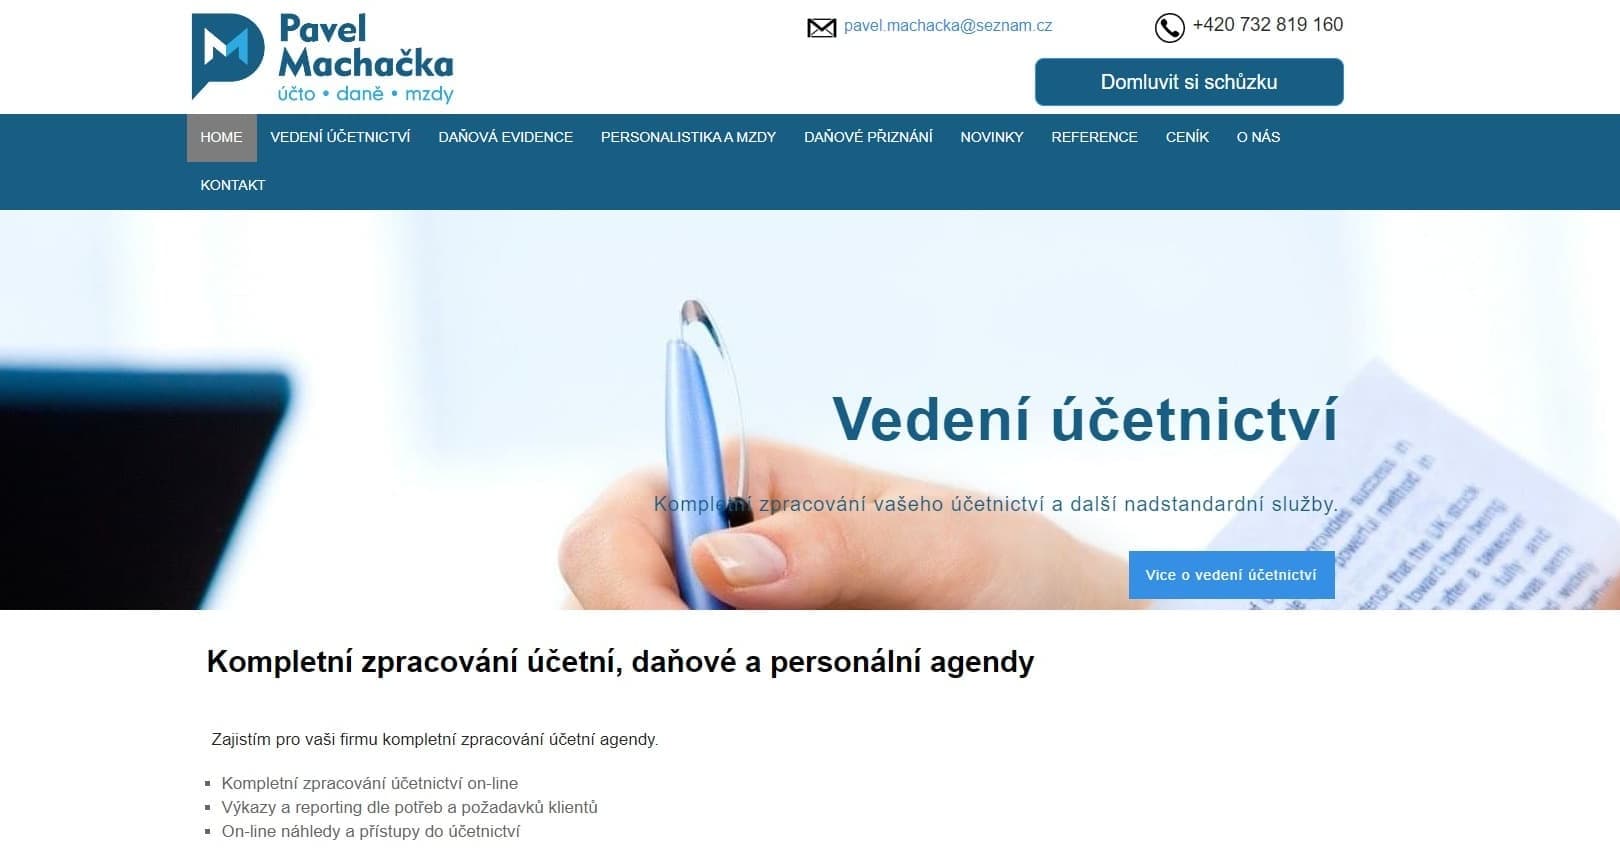 Pavel Machačka účetnictví | webdesign Dejtonaweb.cz